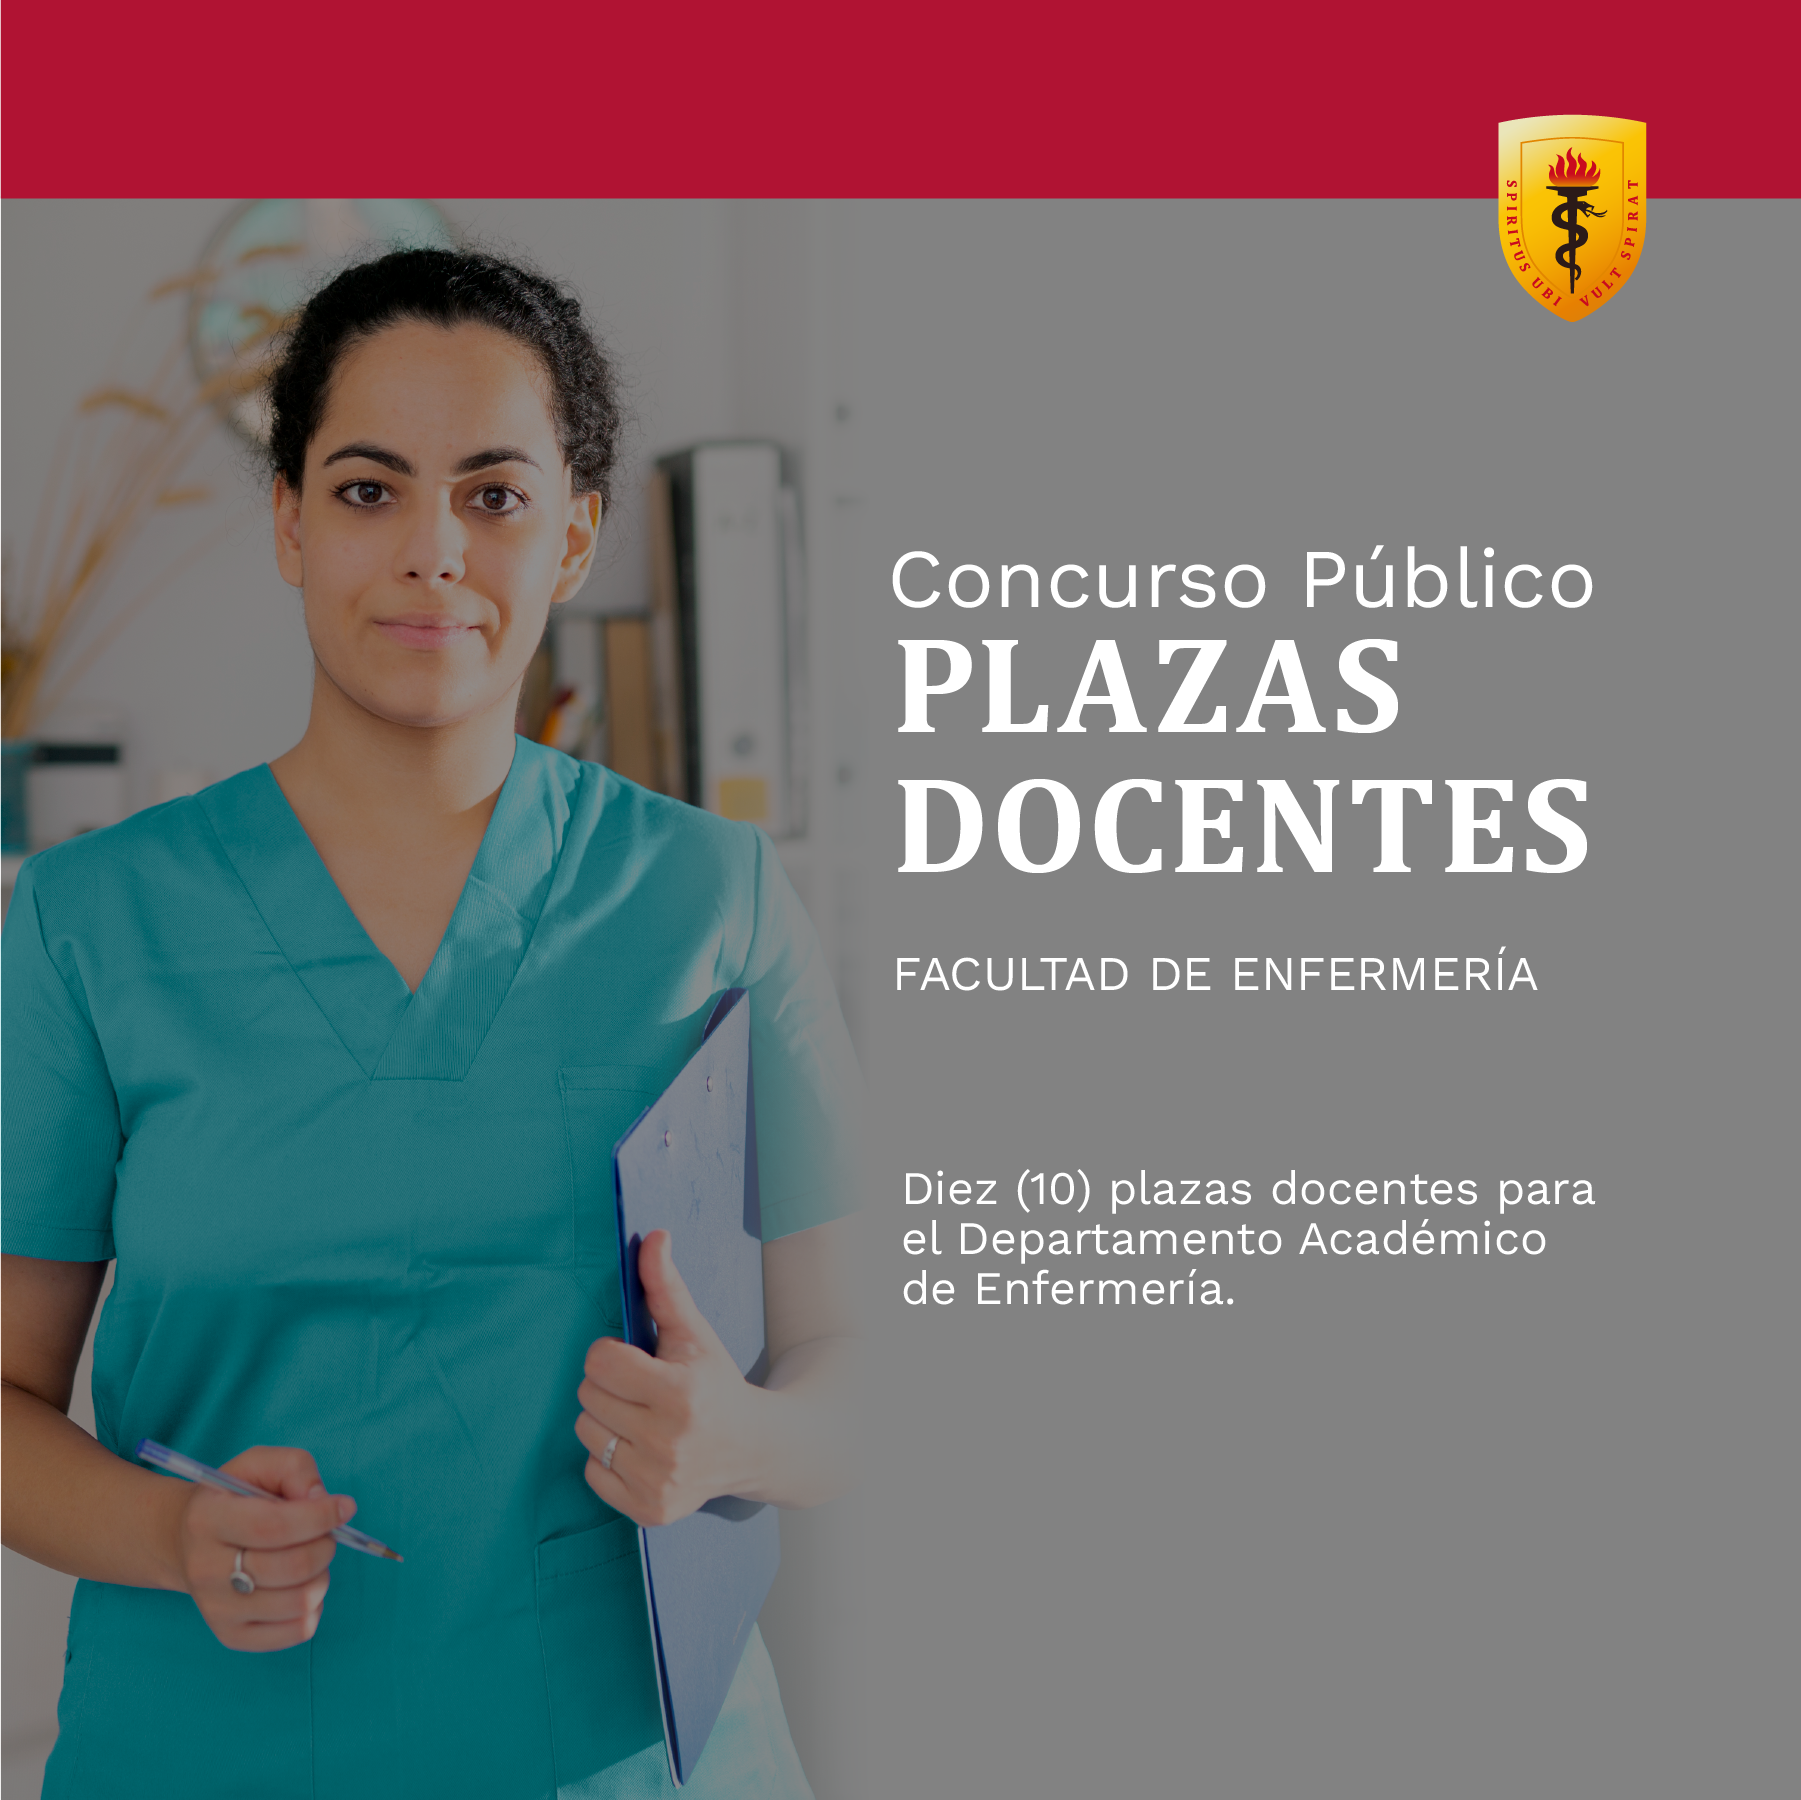 Concurso Público Plazas Docentes Facultad Enfermería – Departamento Académico de Enfermería